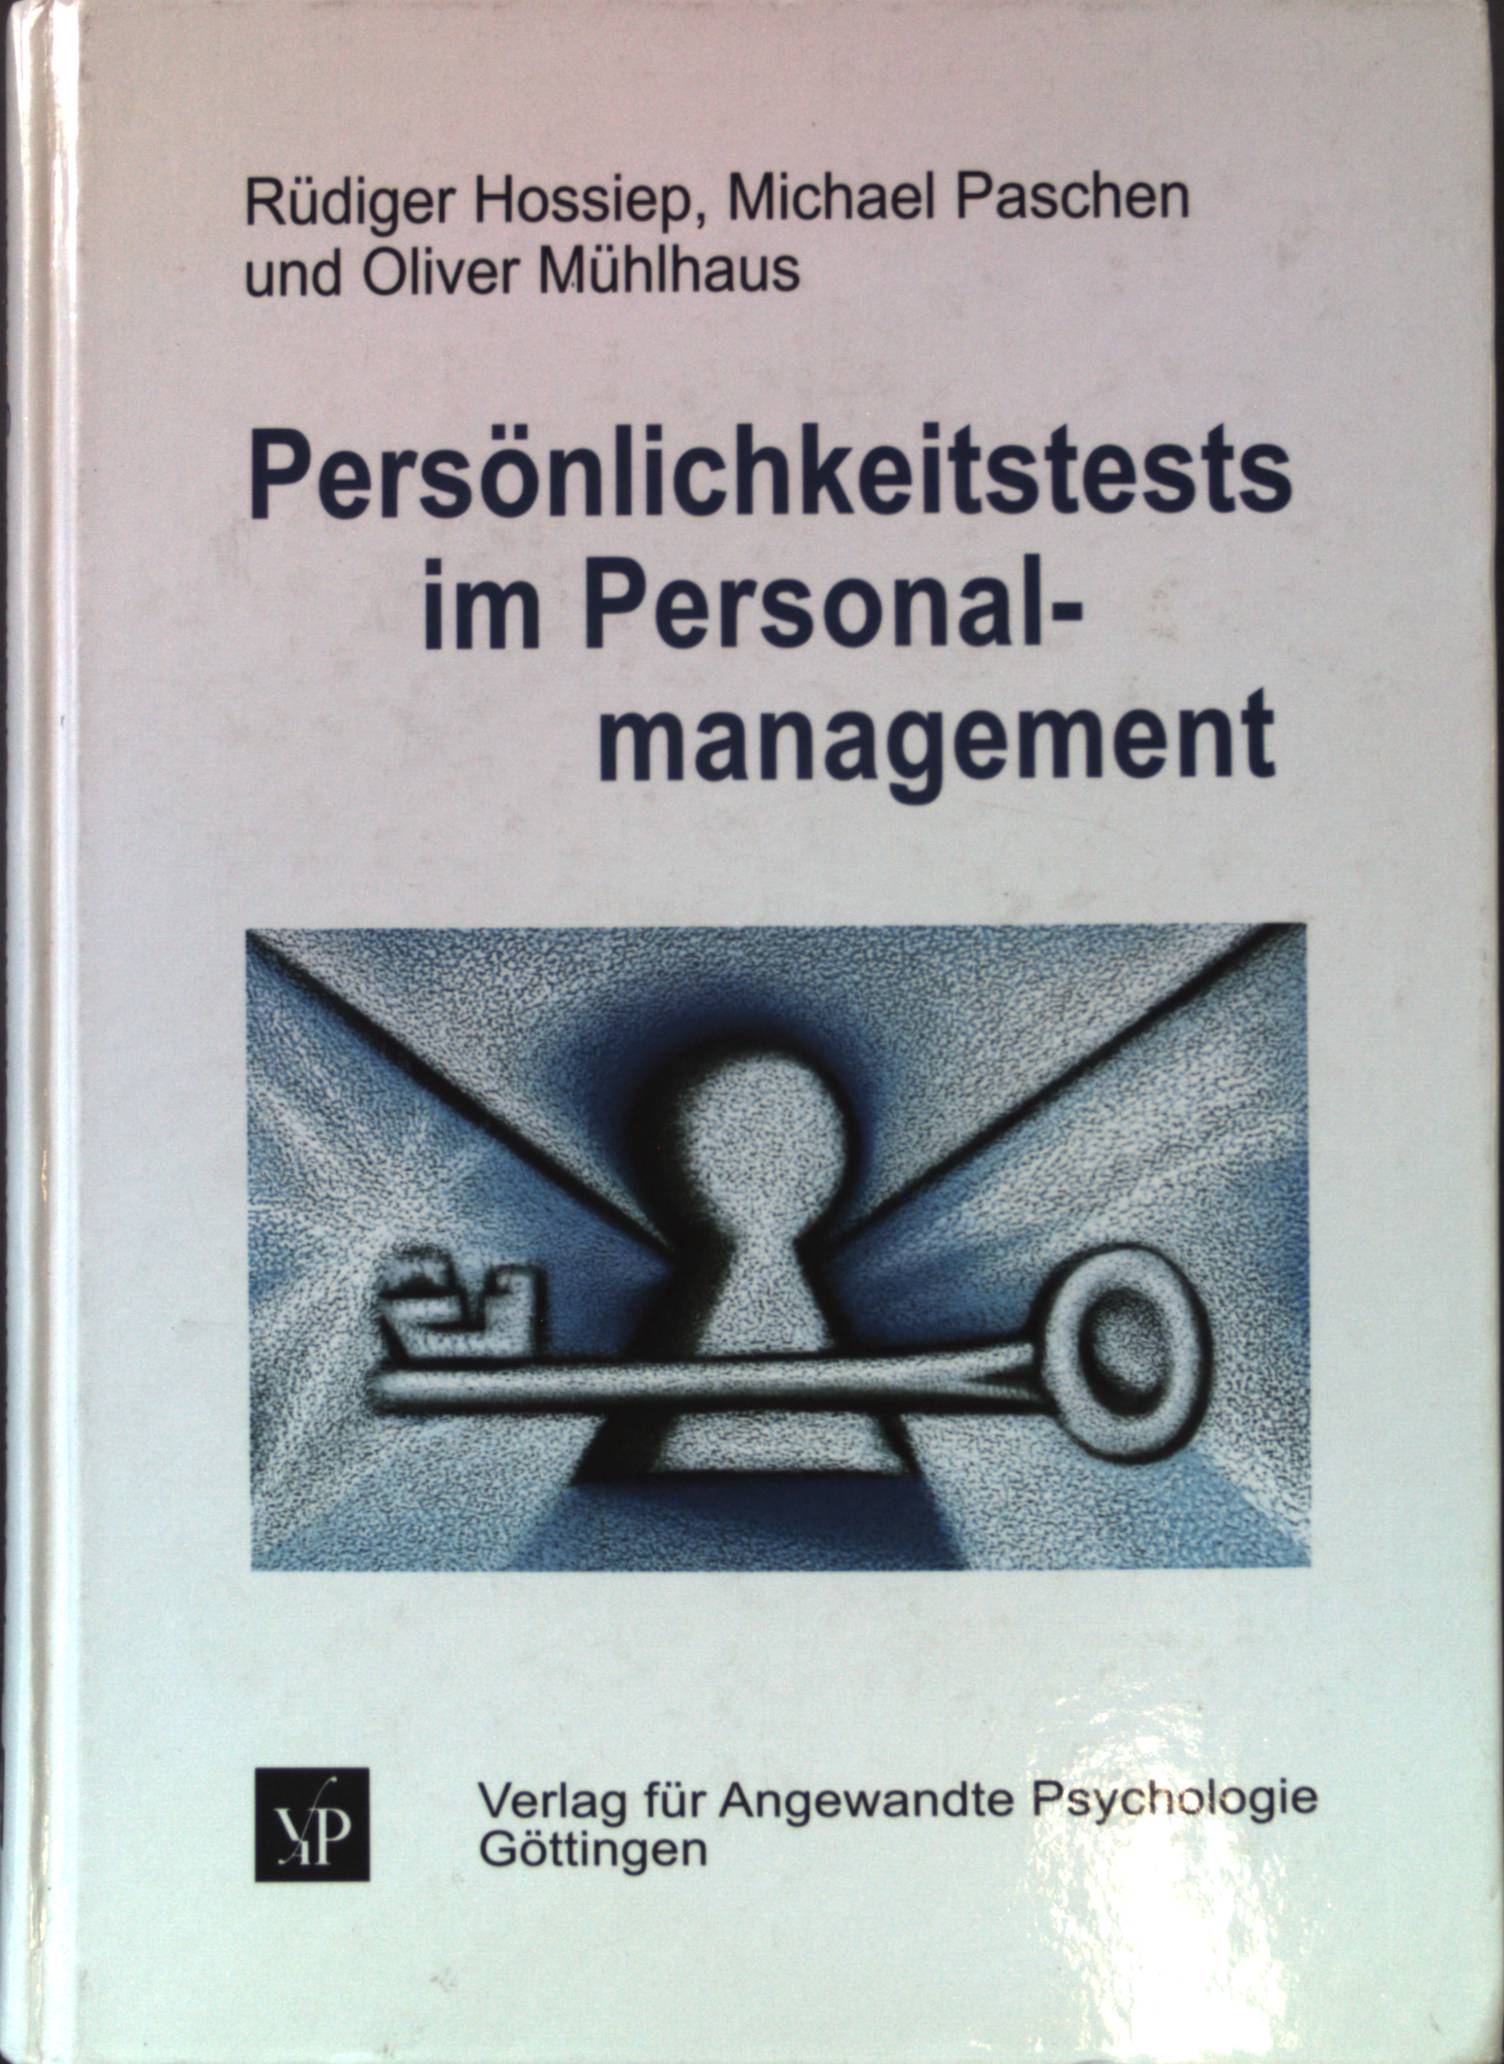 Persönlichkeitstests im Personalmanagement : Grundlagen, Instrumente und Anwendungen. - Hossiep, Rüdiger, Michael Paschen und Oliver Mühlhaus